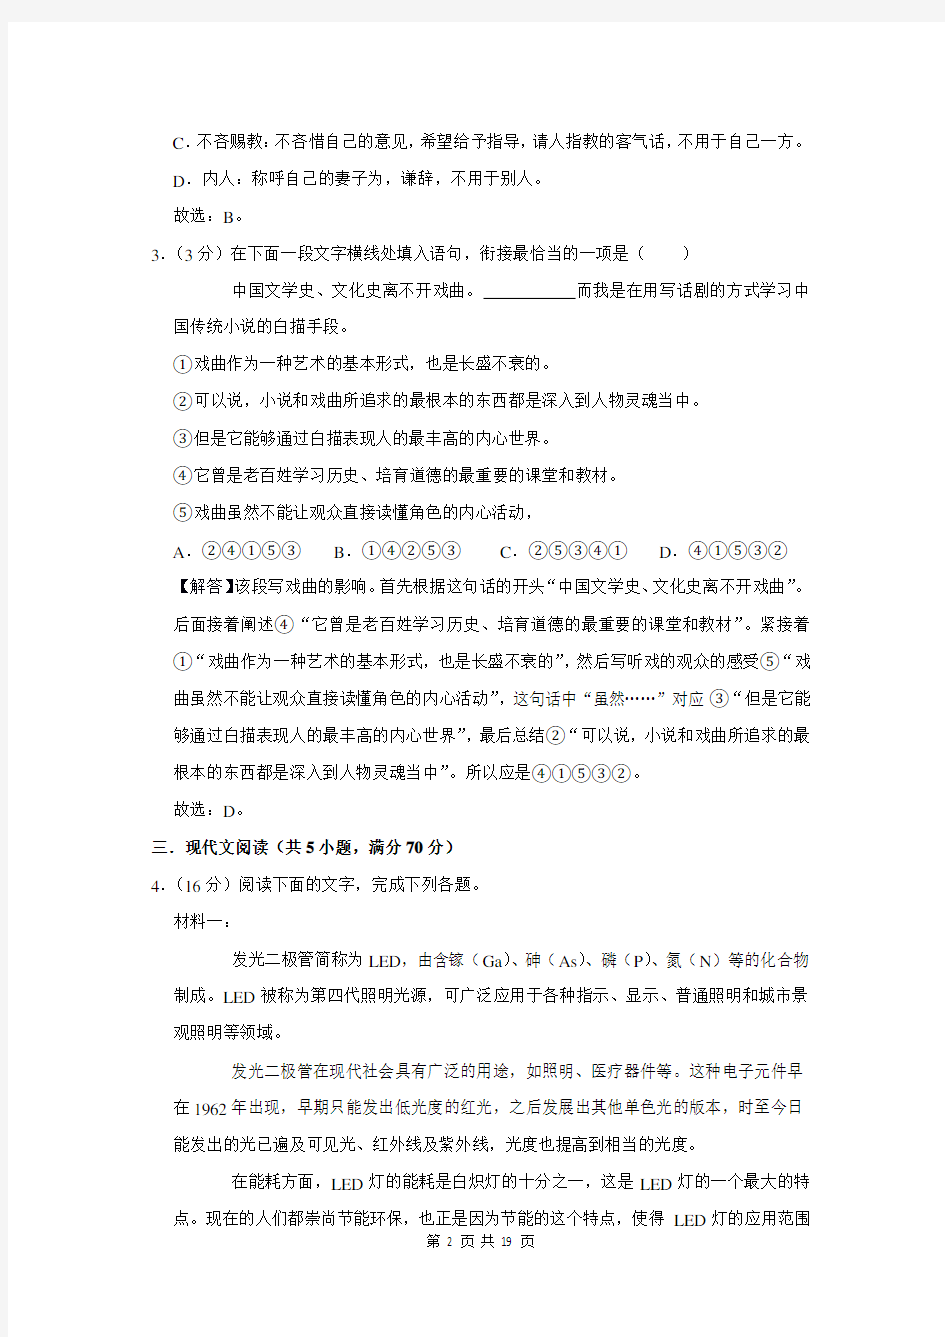 2021年上海市高考语文考前最后一卷解析版